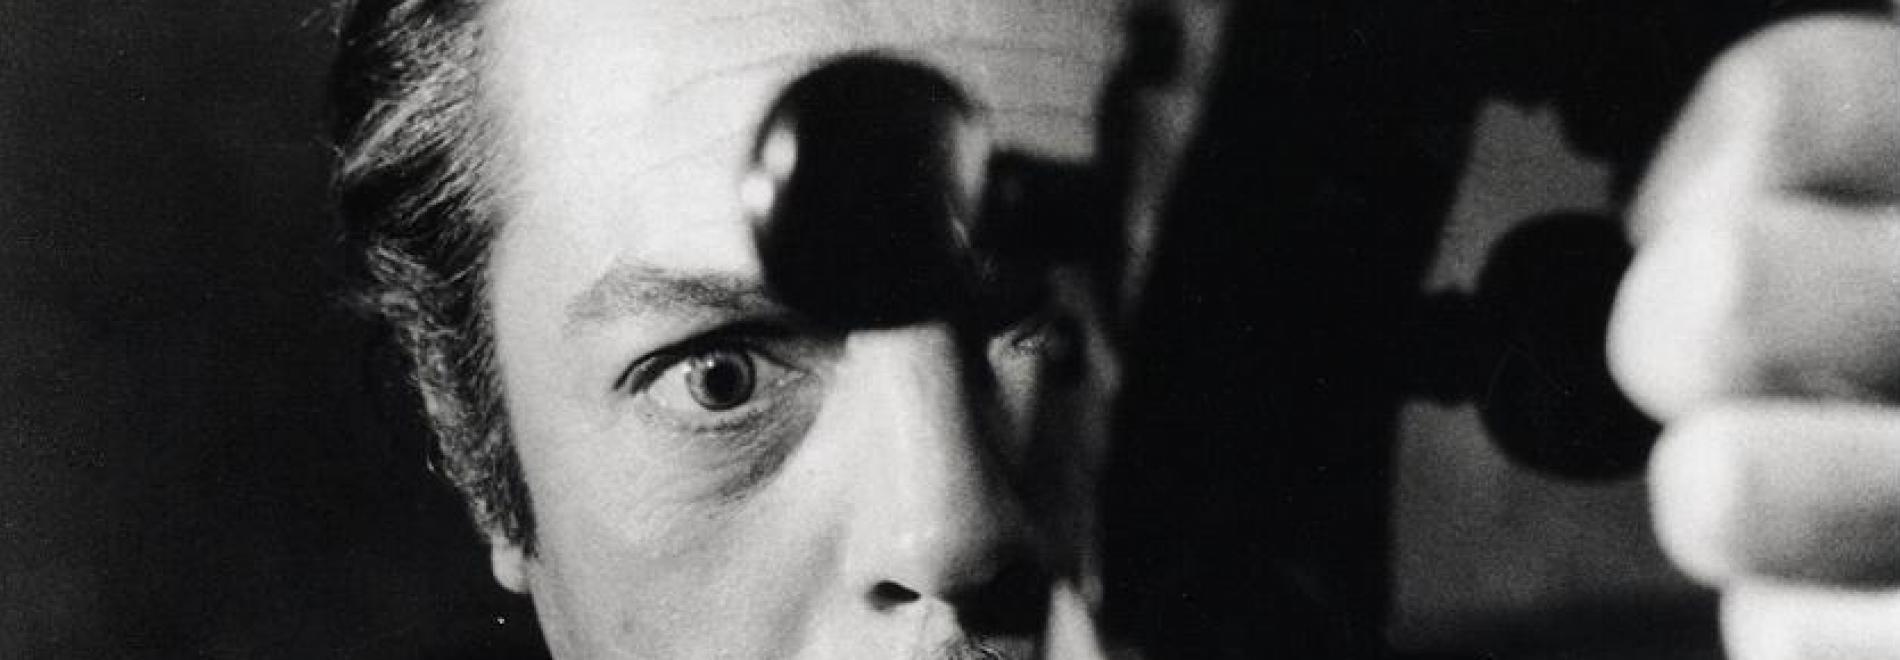 ll viaggio di G. Mastorna di Federico Fellini - Un esperimento di ricostruzione El viatge de Mastorna de Federico Fellini. Un experiment de reconstrucció